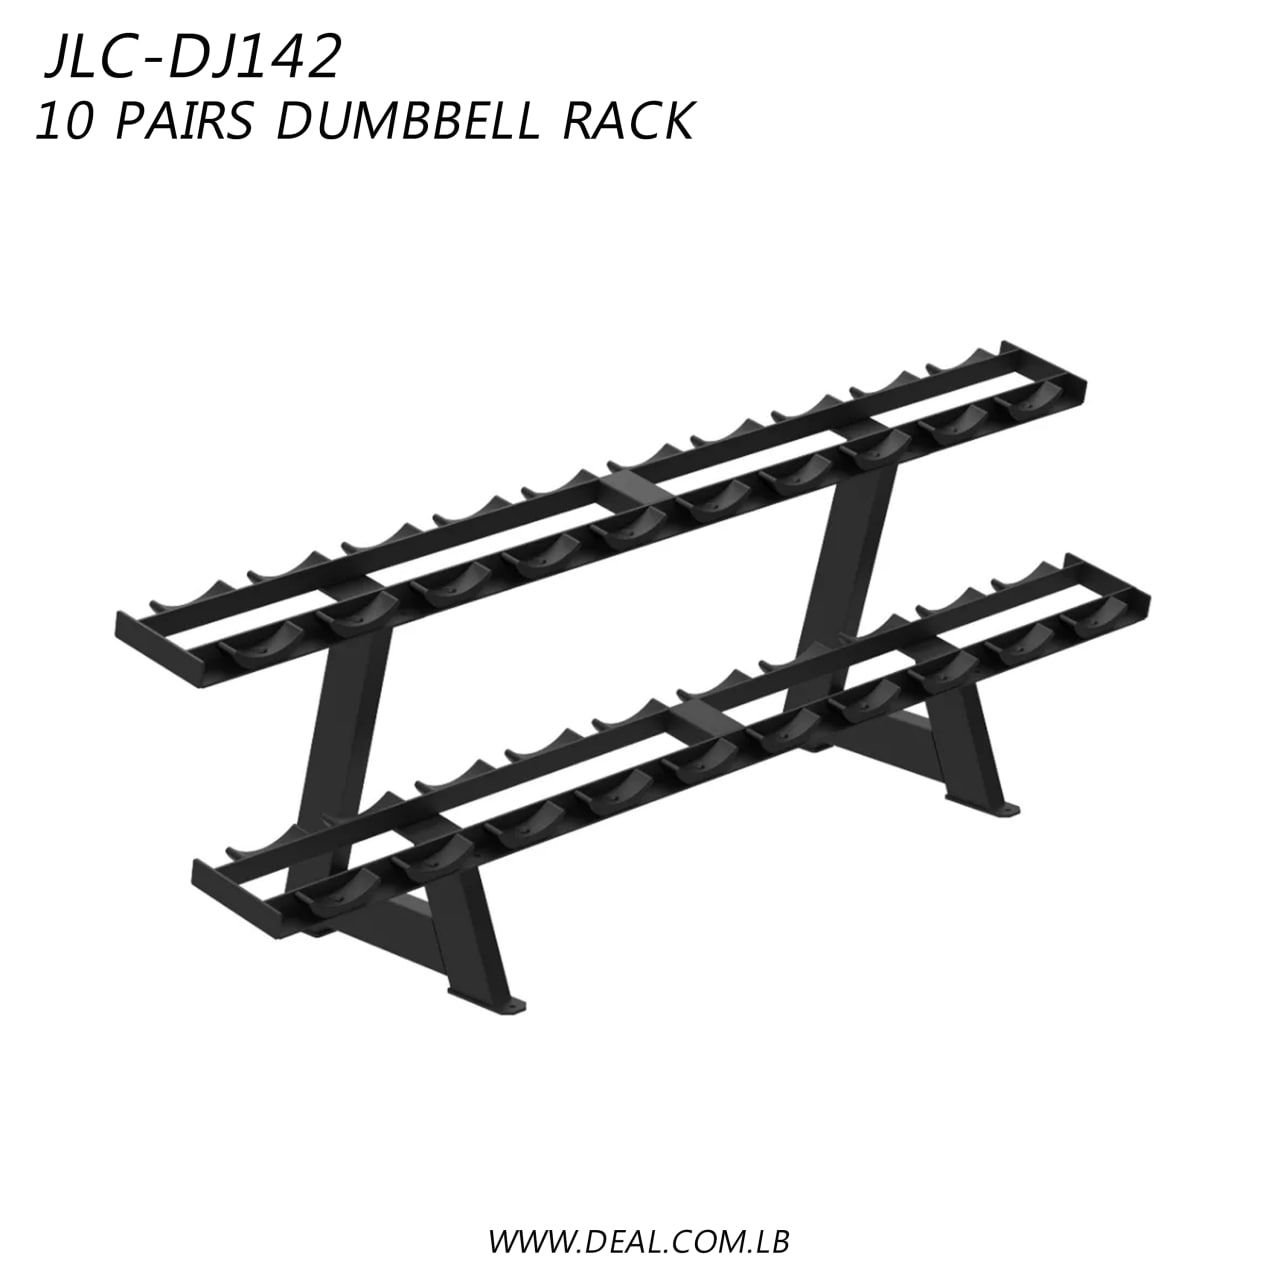 JLC-DJ142 | 10 Pairs Dumbbell Rack